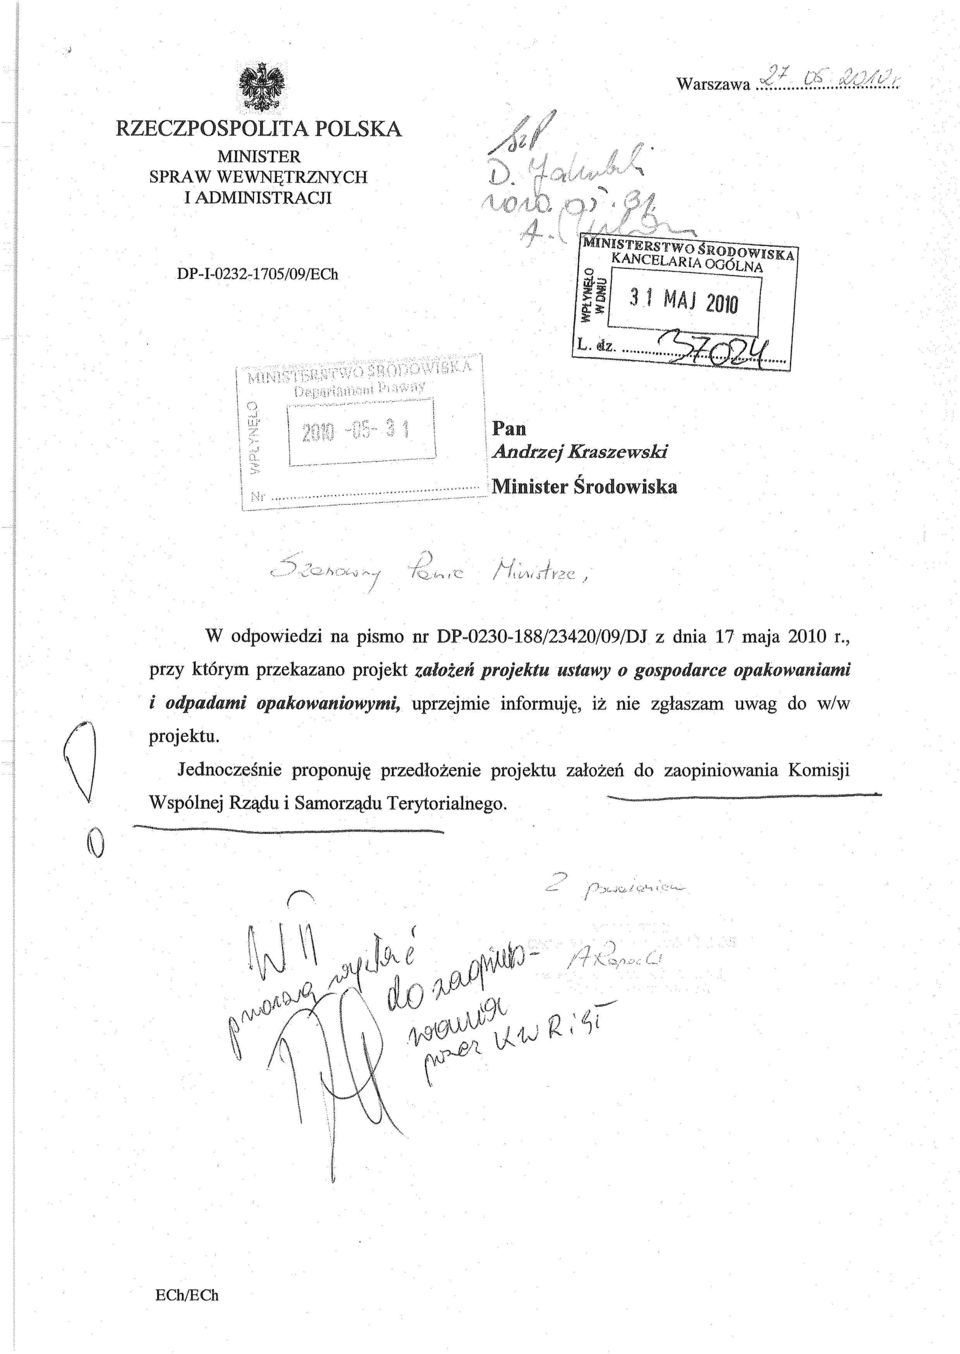 L. Pan Andrzej Kraszewski Minister Środowiska W odpowiedzi na pismo nr DP-0230-188/23420/09/DJ z dnia 17 maja 2010 r.